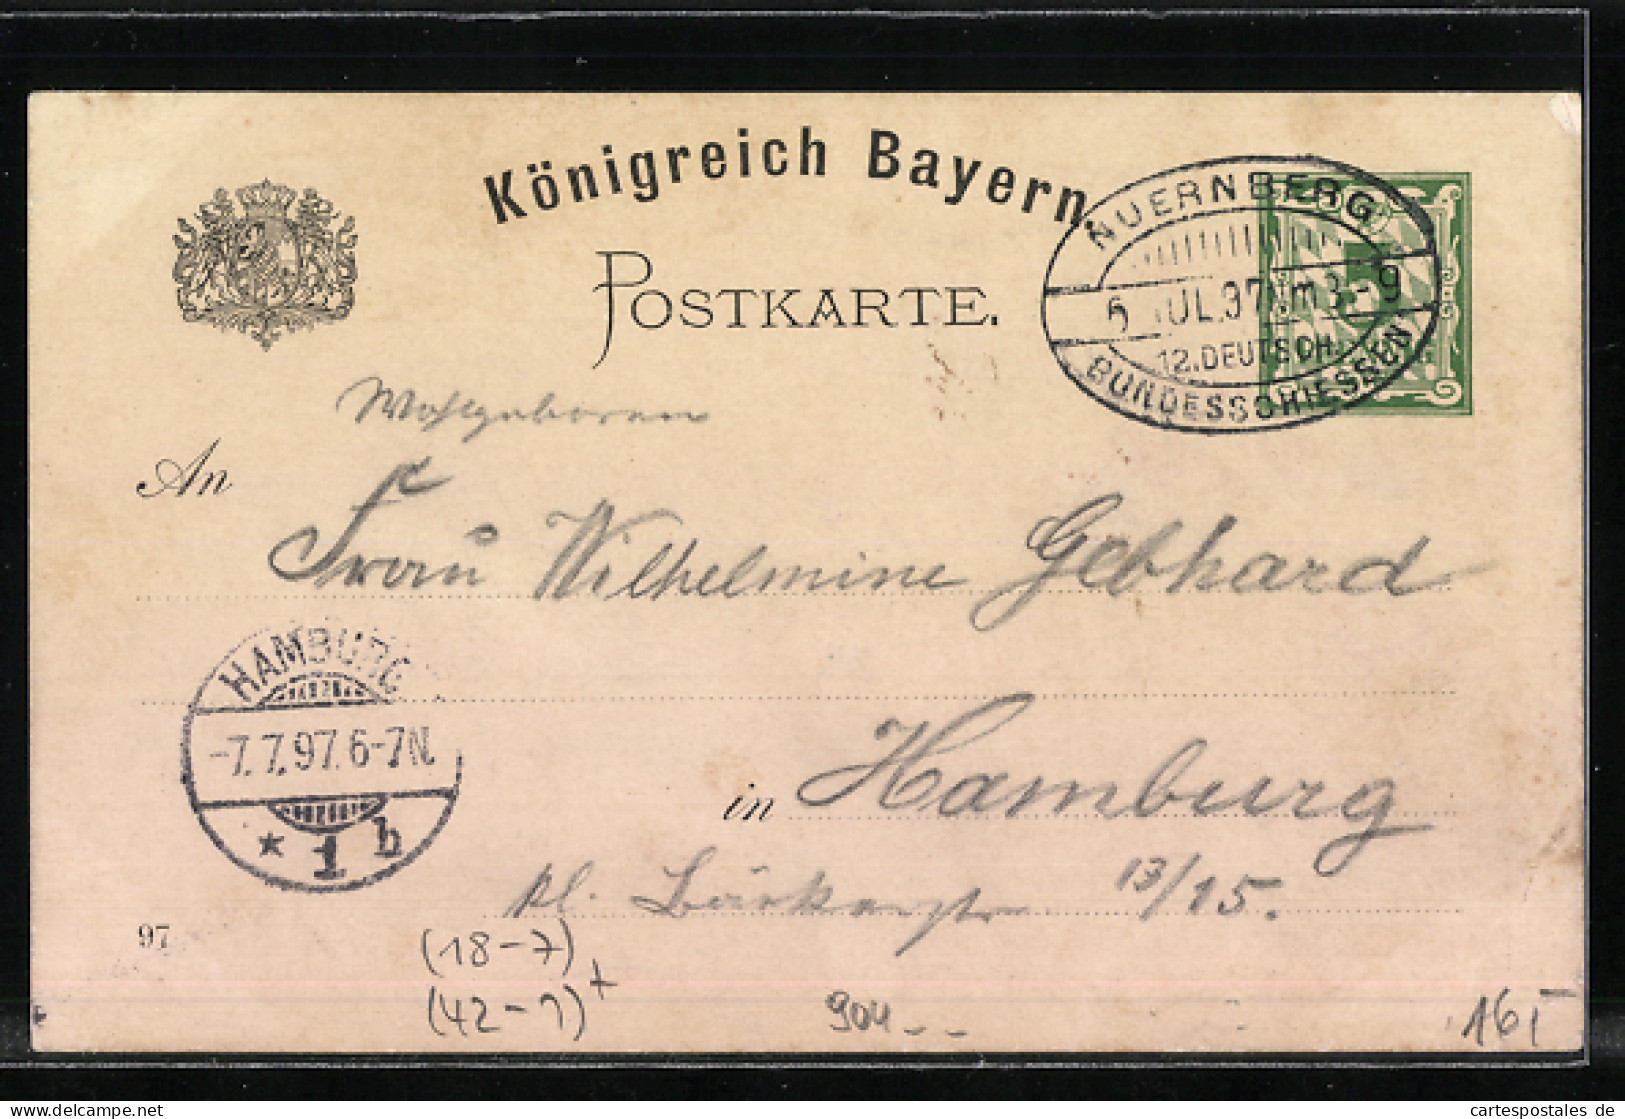 Lithographie Nürnberg, XII. Deutsches Bundesschiessen 1897, Schützenfest  - Hunting